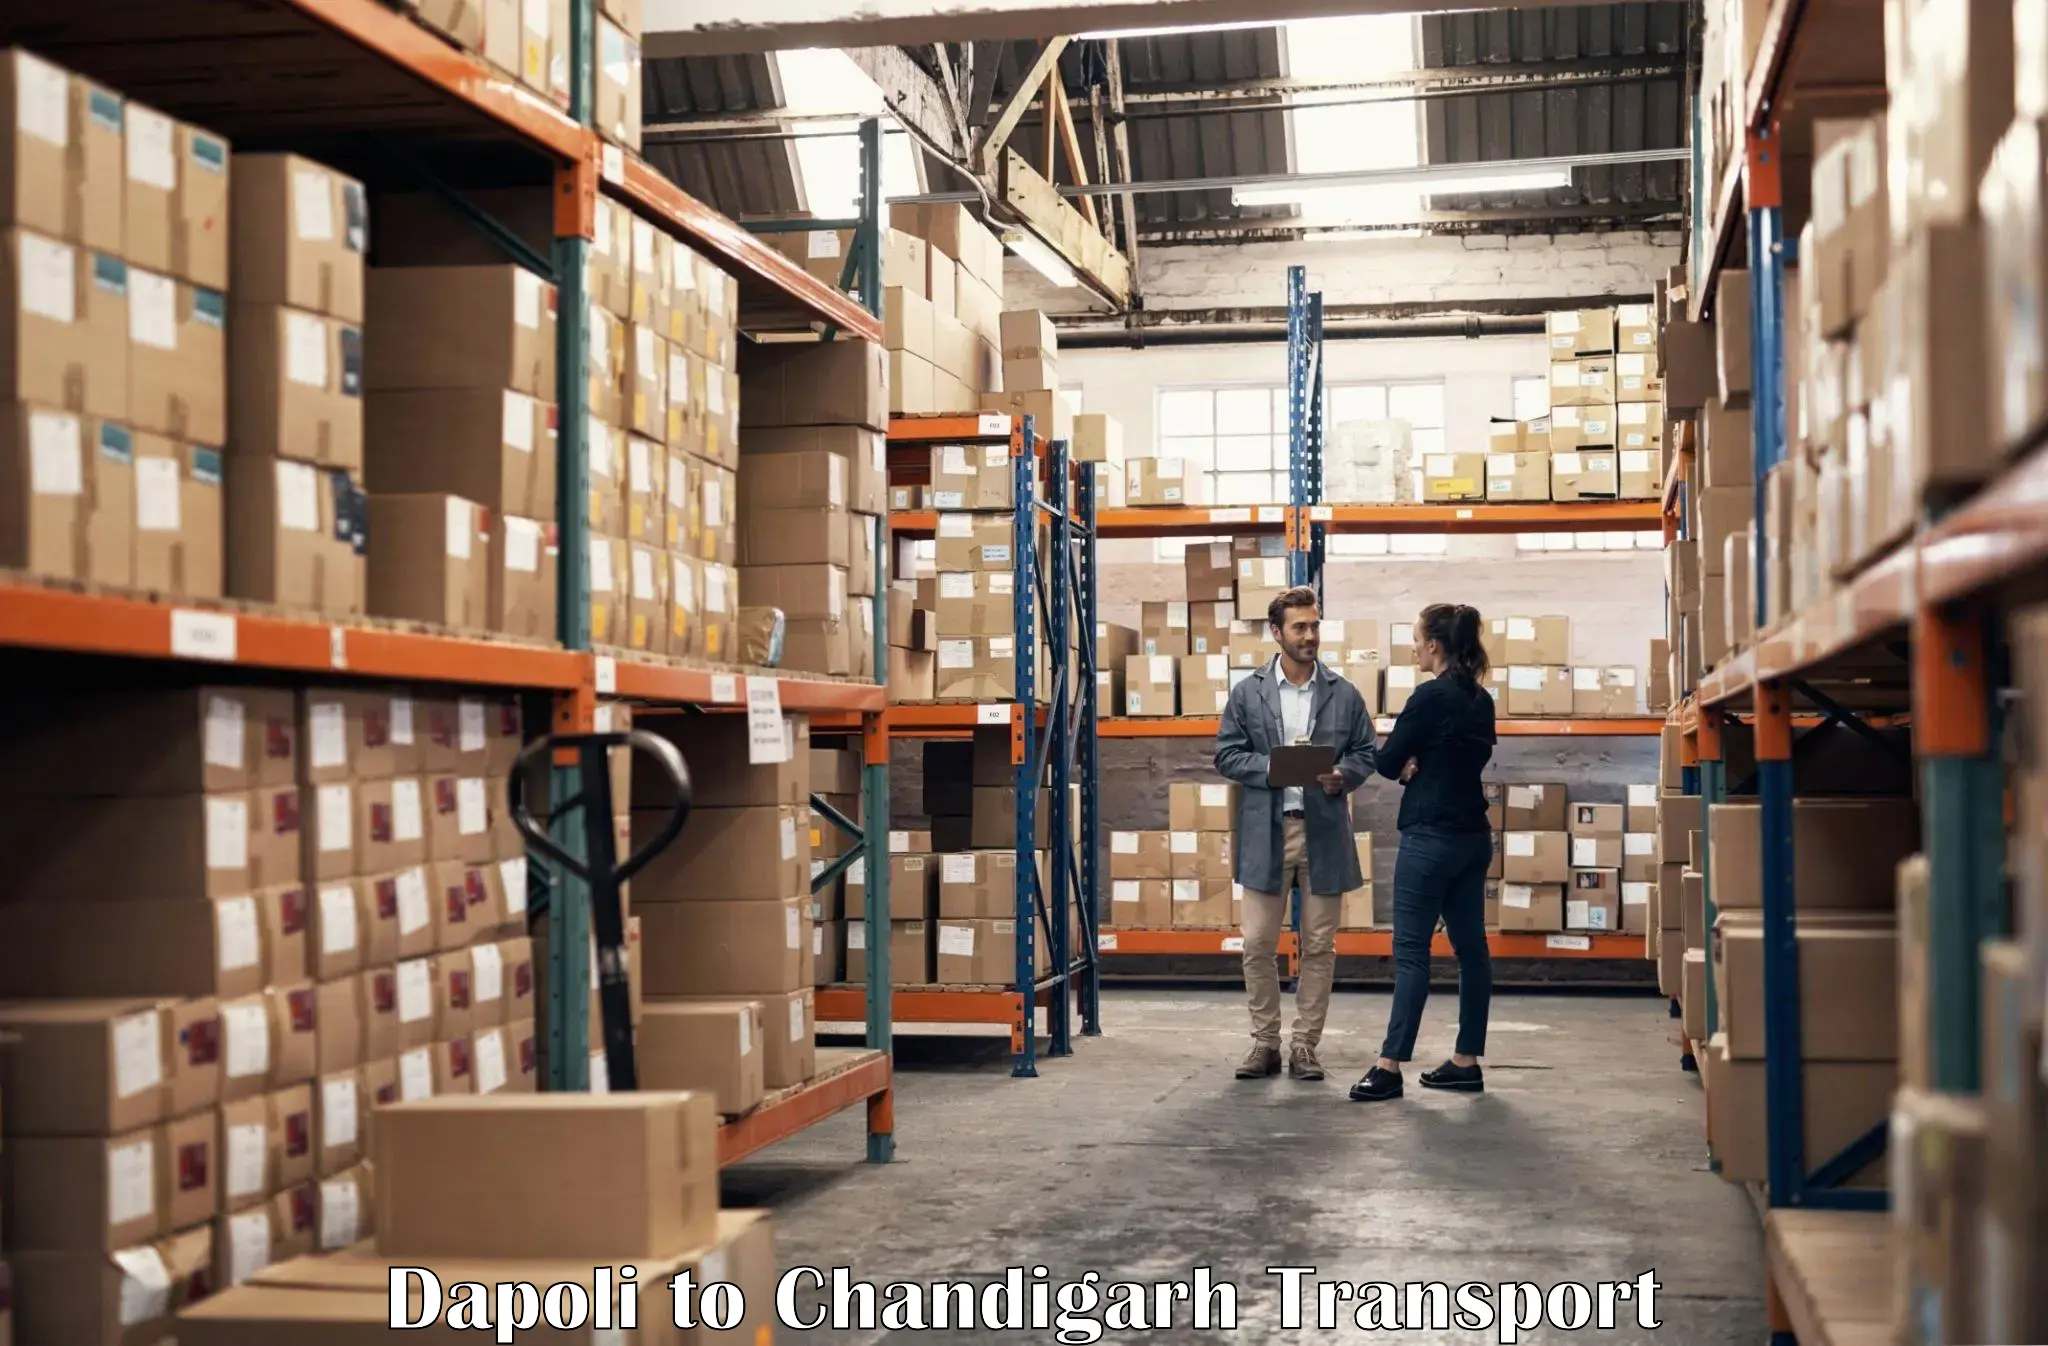 Shipping partner Dapoli to Chandigarh